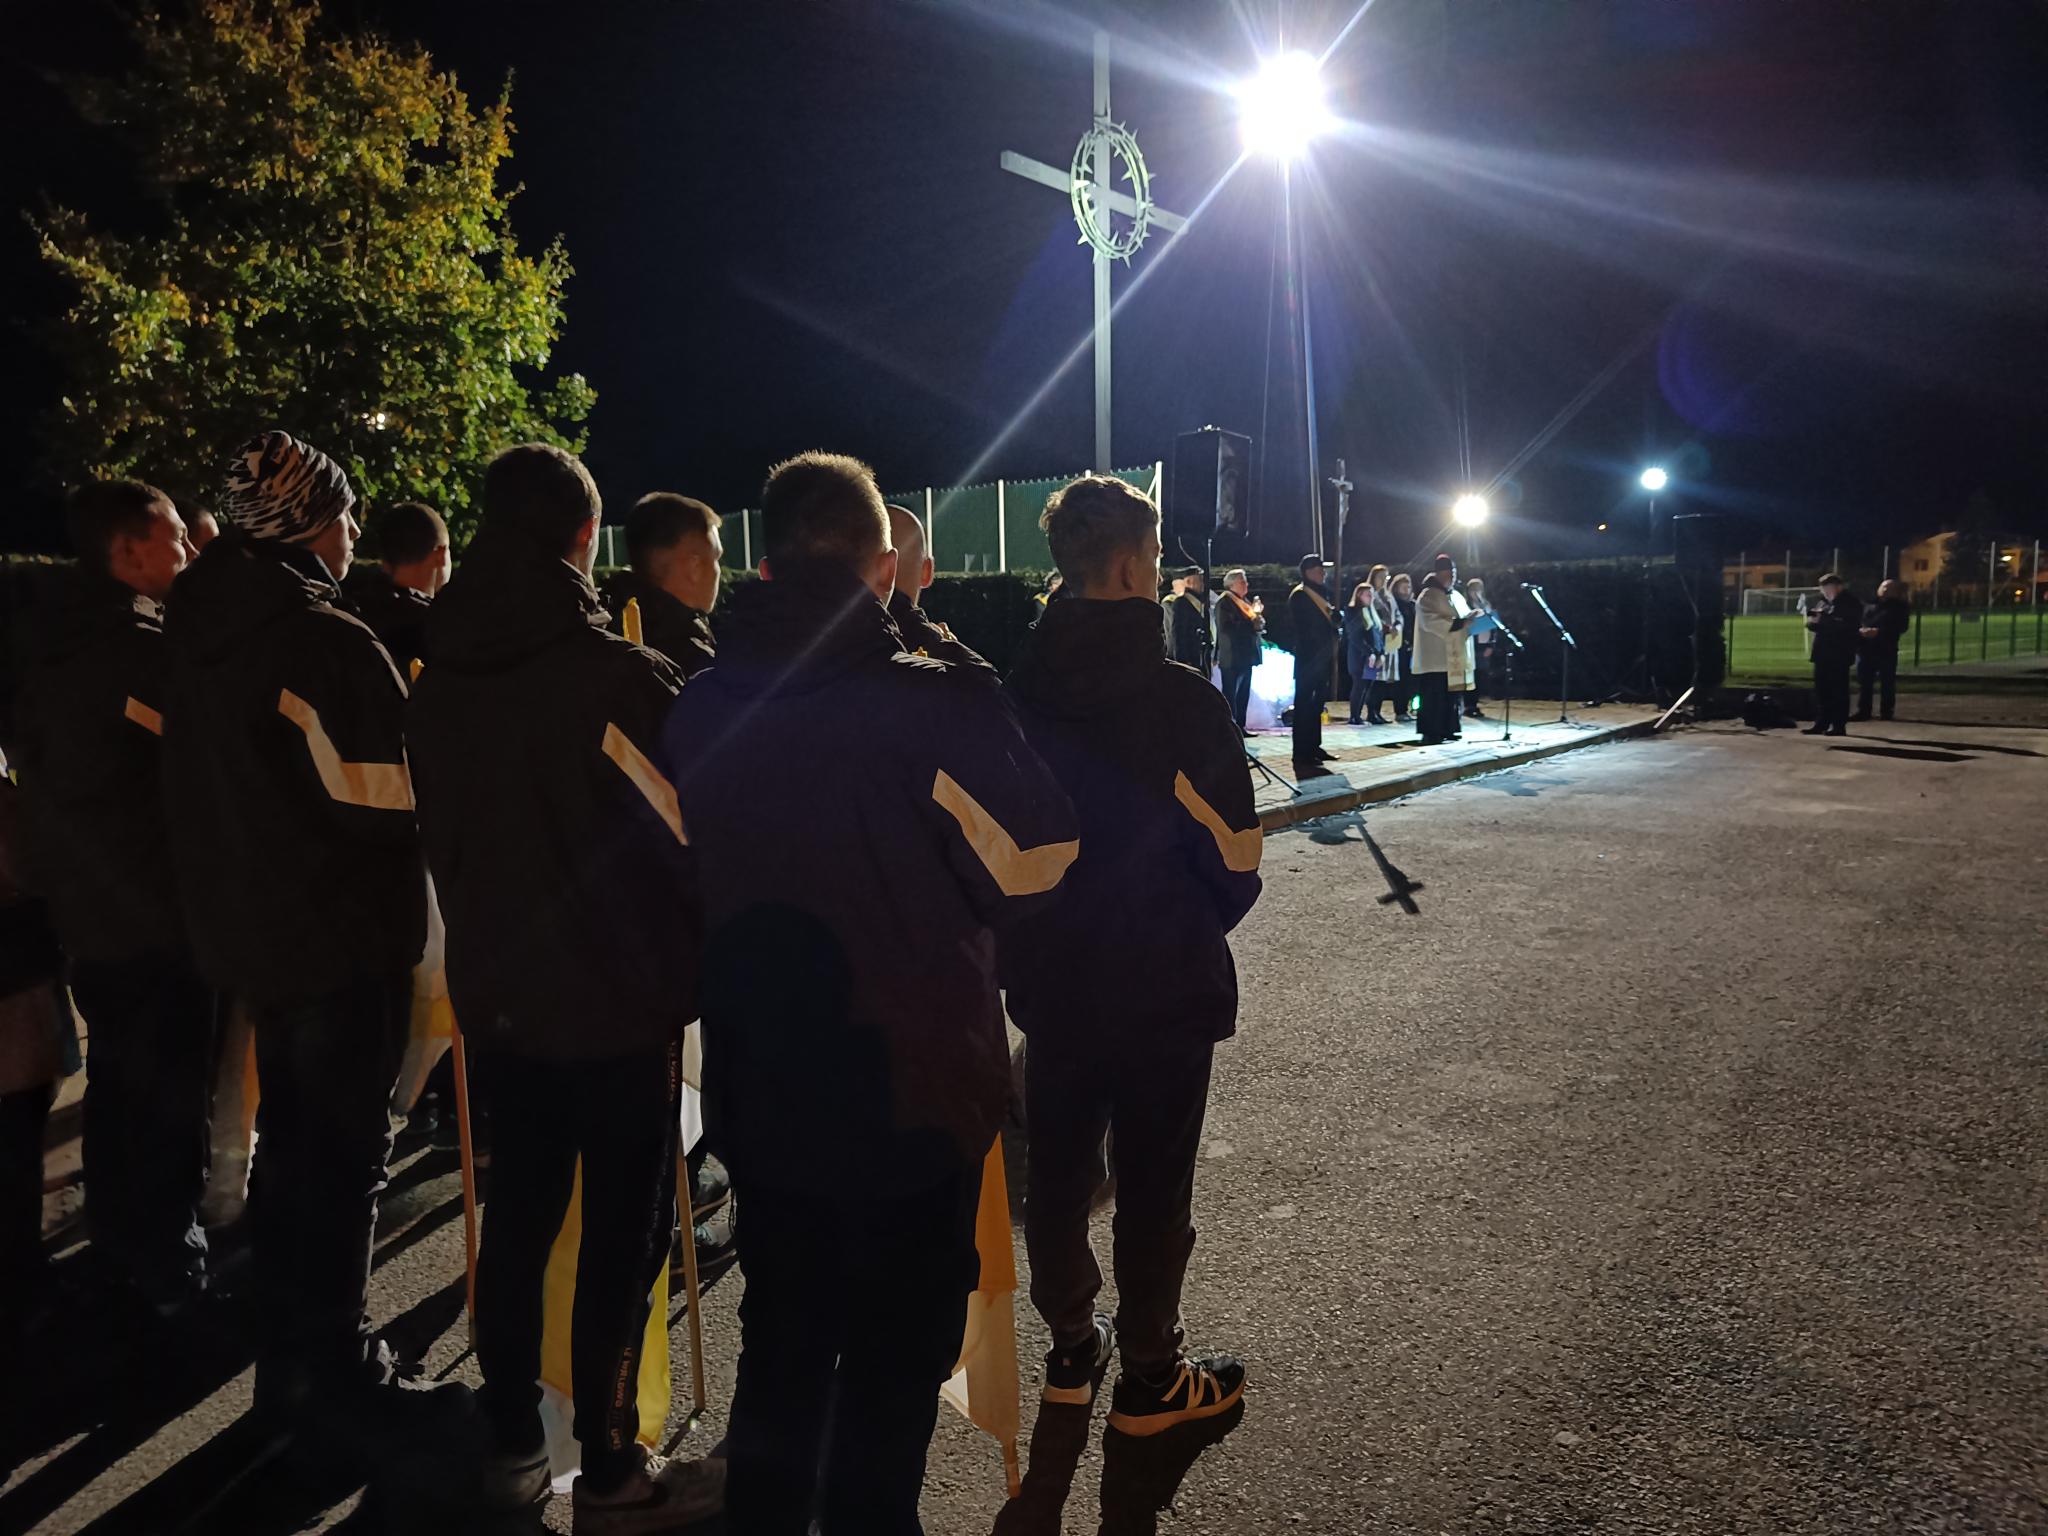 Dzień Papieski | Grupa chłopców w kurtkach stoi tyłem w dwuszeregu, w tle widoczny wysoki krzyż, pod którym odprawiane jest nabożeństwo. Zdjęcie nocne..jpg